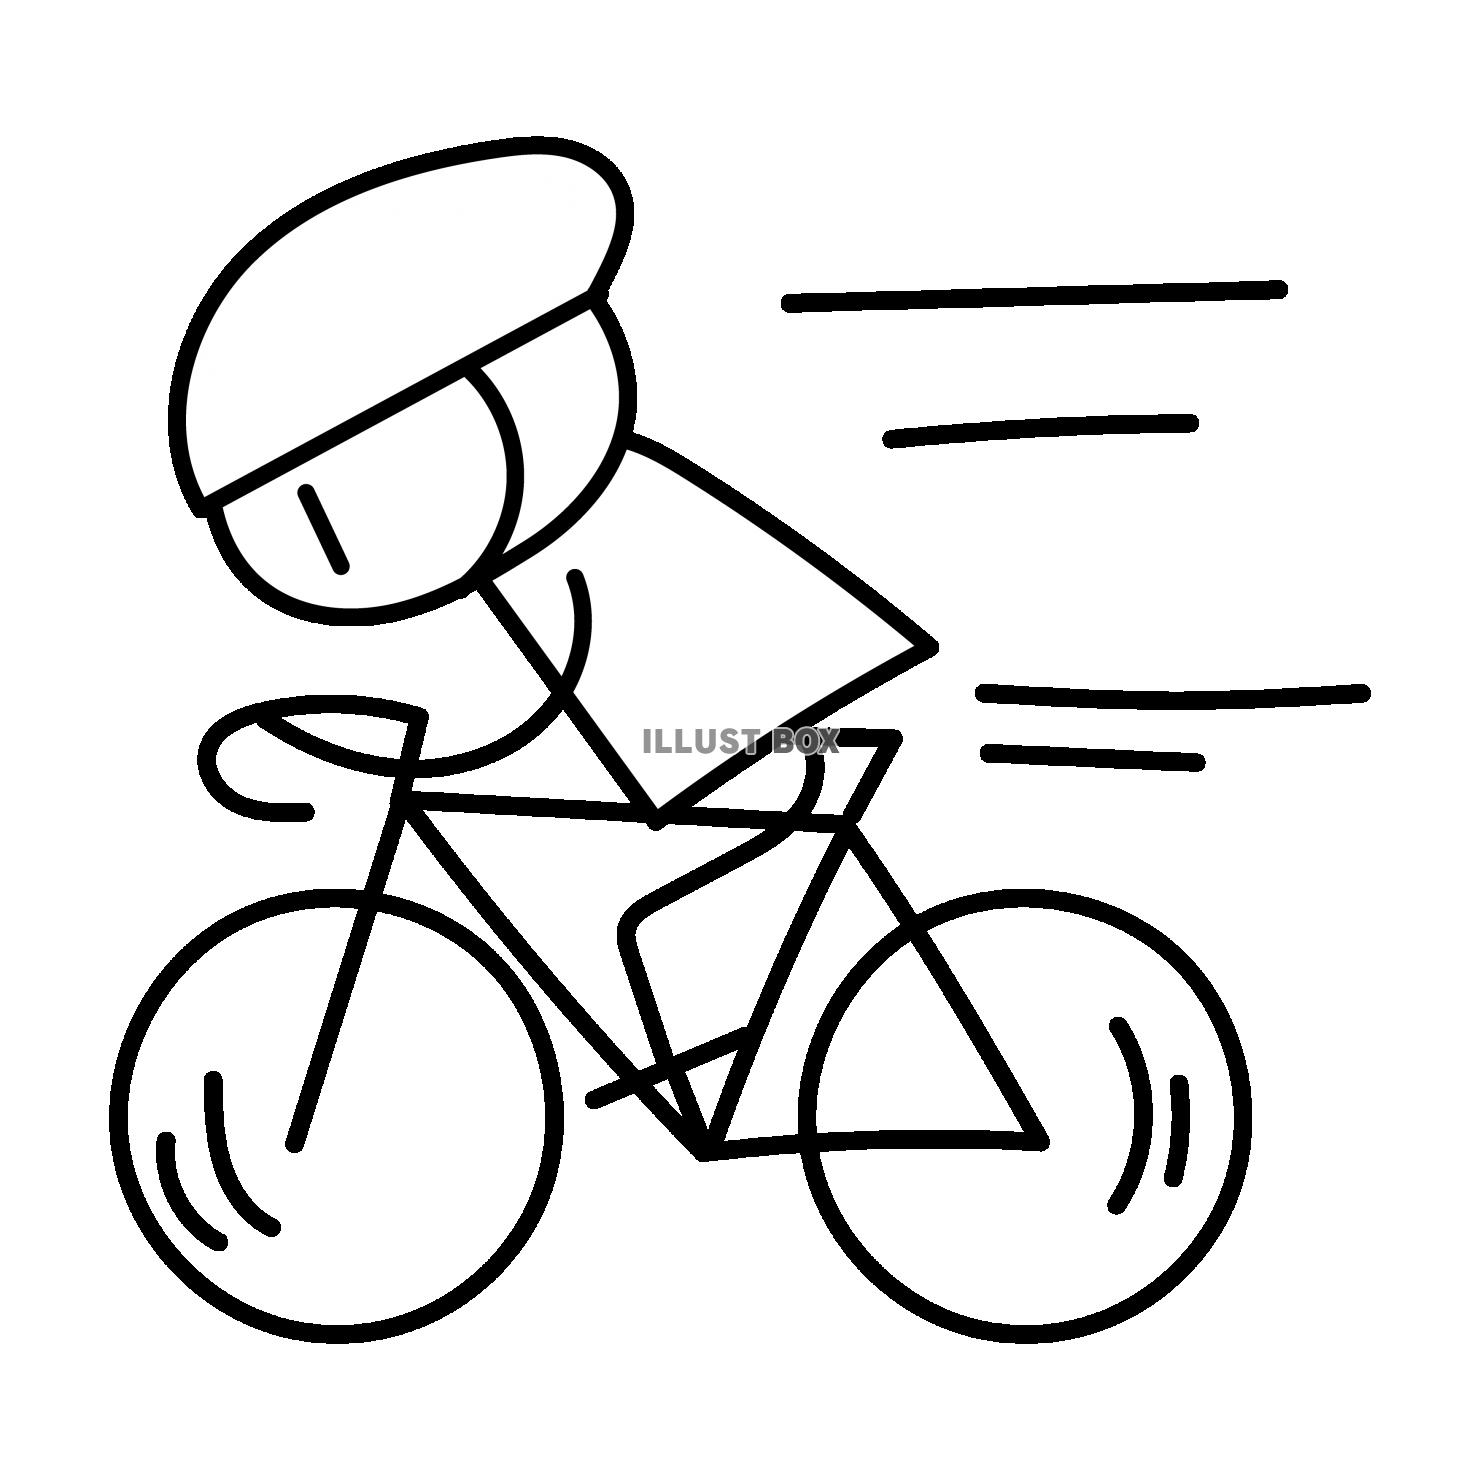 無料イラスト ロードバイク スピード 白黒 手描き 人物